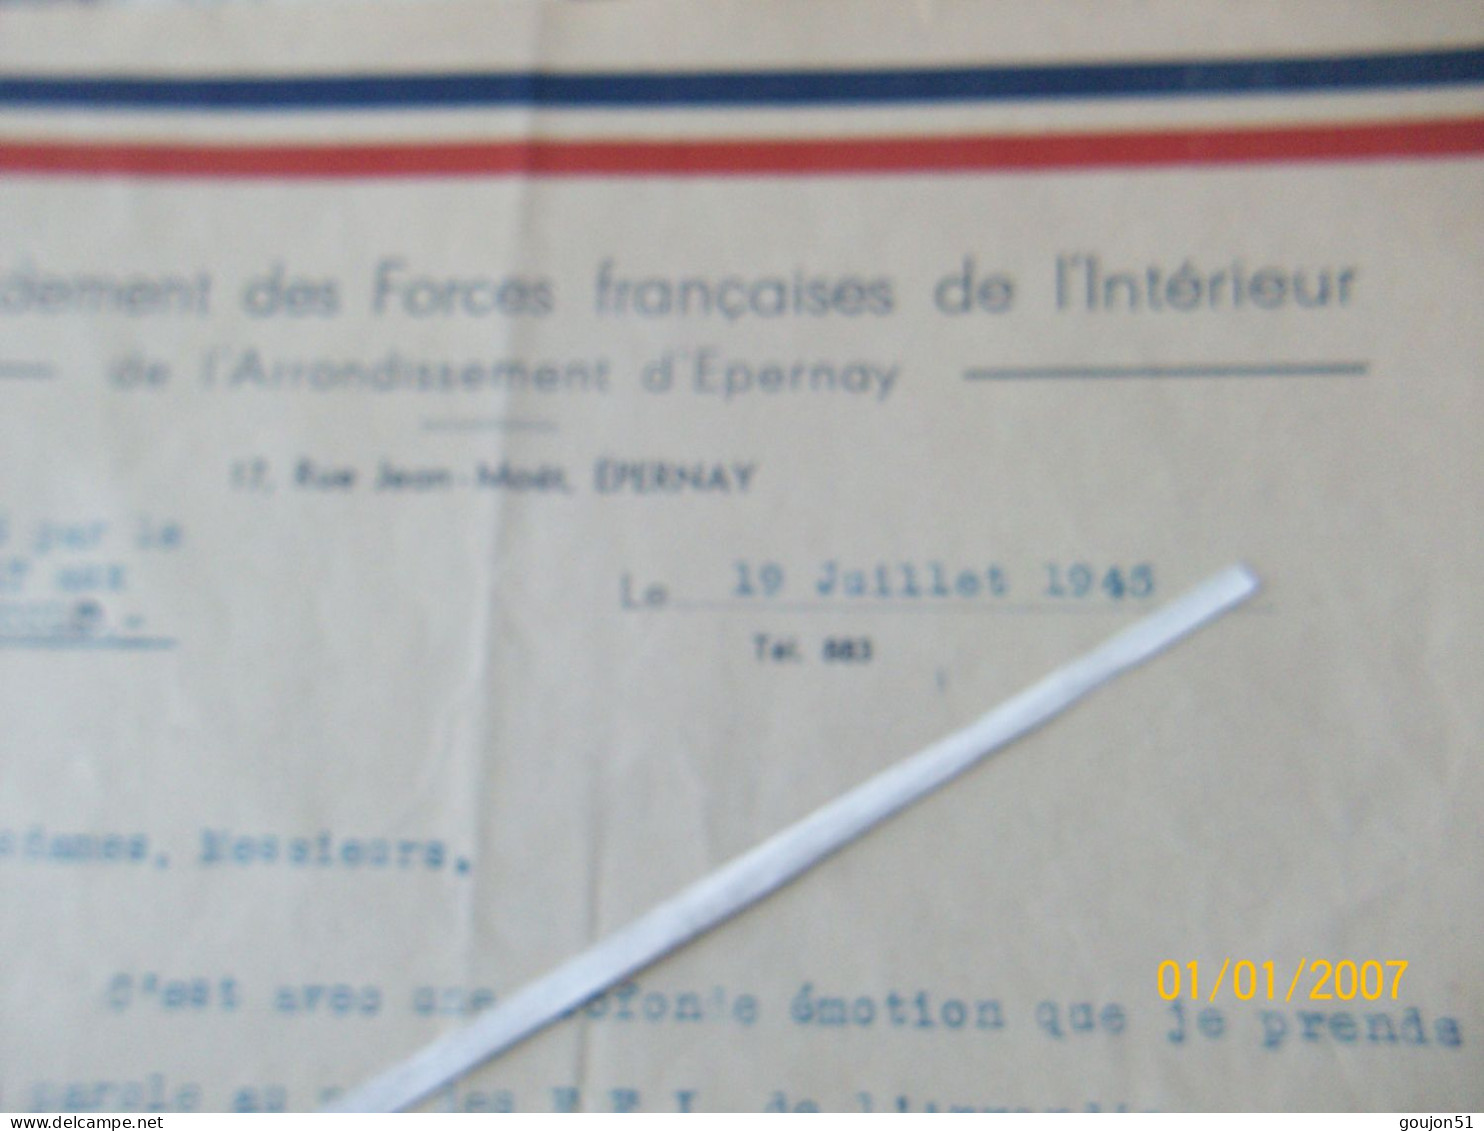 Lettre Commandement Des Forces Française De L' Intérieur De L'Arrondissement D'Epernay Discours Prononcé Par Le Capitain - Documentos